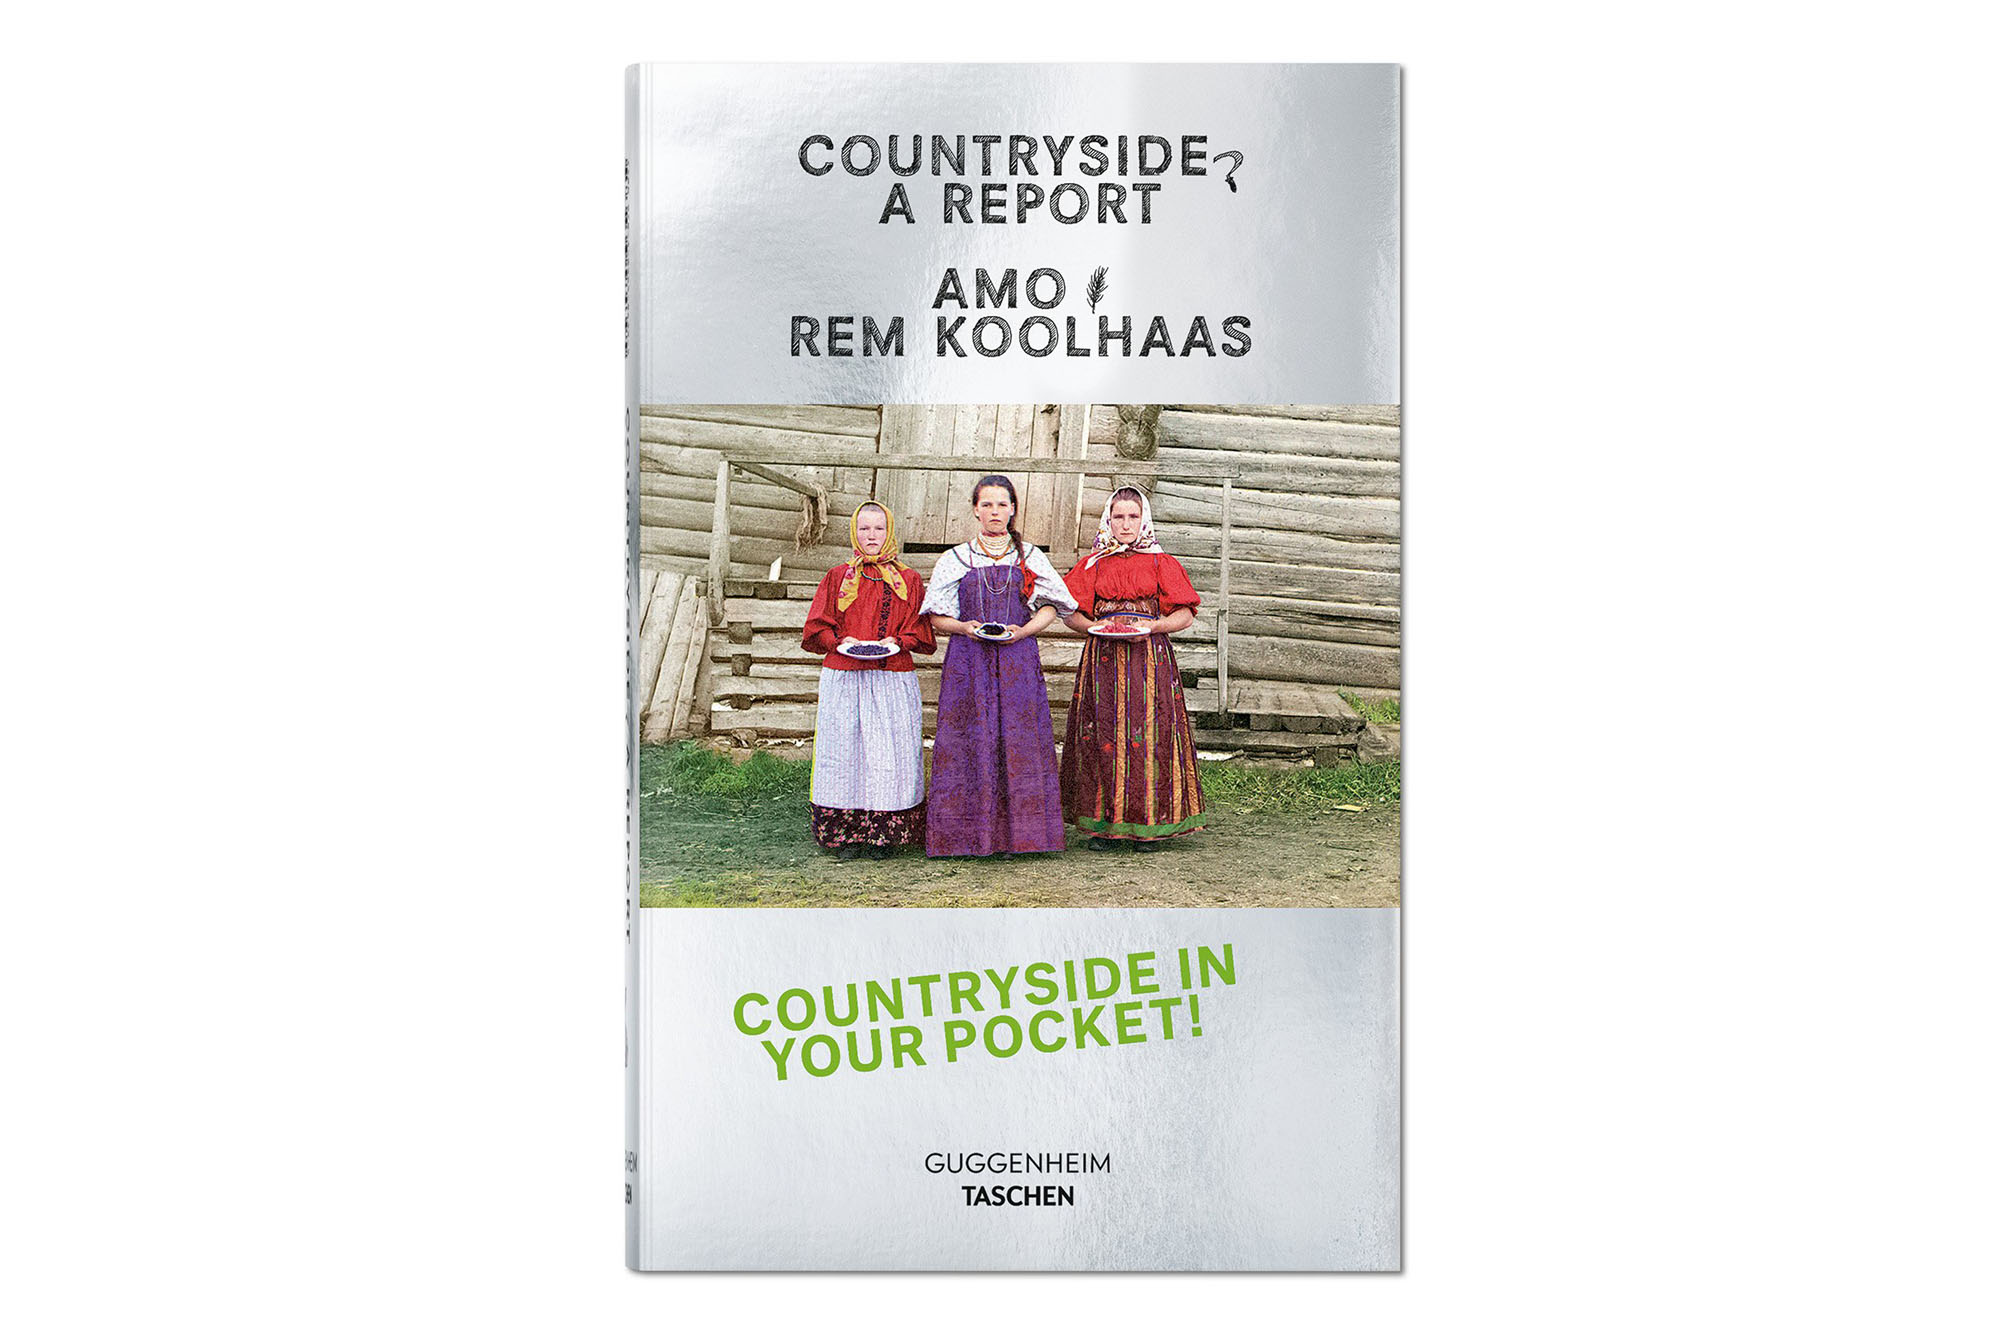 Countryside, A Report von Rem Koolhaas – Das Hinterland entscheidet